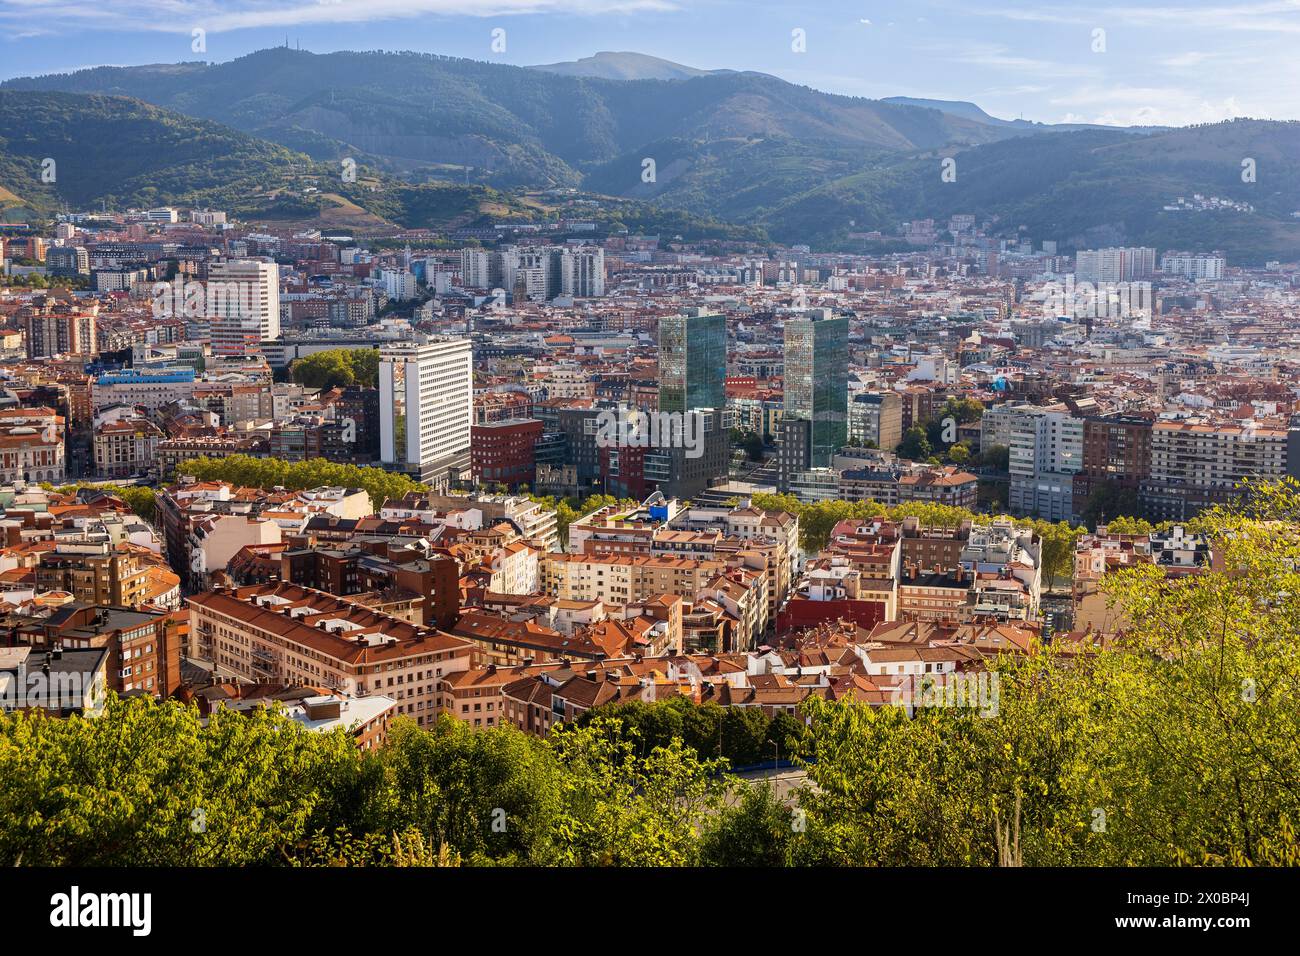 Une vue aérienne du centre-ville de Bilbao, avec les montagnes environnantes enveloppées de brume au loin. Bilbao, pays Basque, Espagne. Banque D'Images